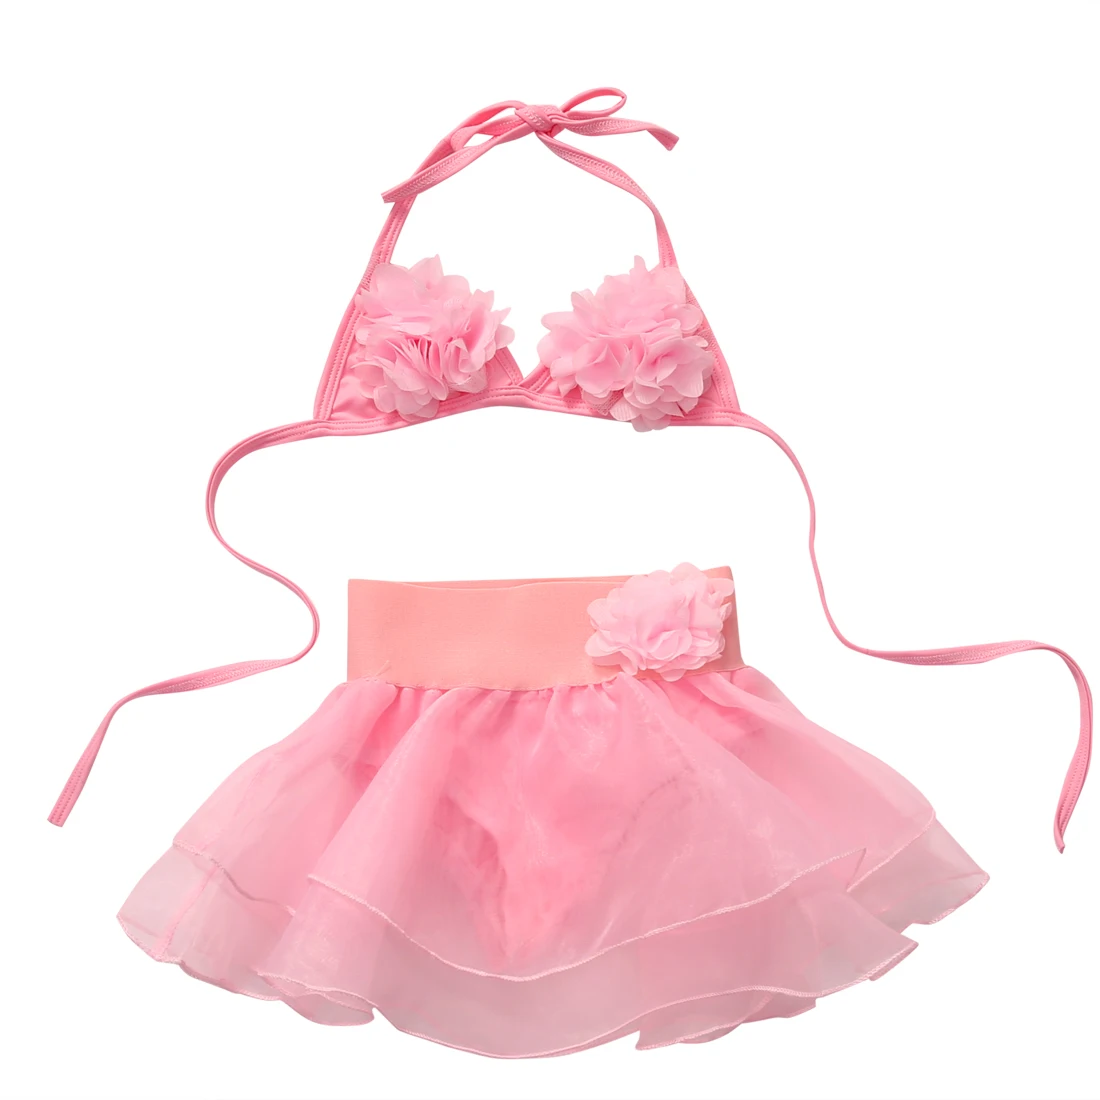 От 1 до 5 лет малыш дети девочка цветок Купальник Танкини бикини костюм Купальники Пляжная одежда купальный костюм для девочек комплект из 2 предметов - Цвет: Розовый